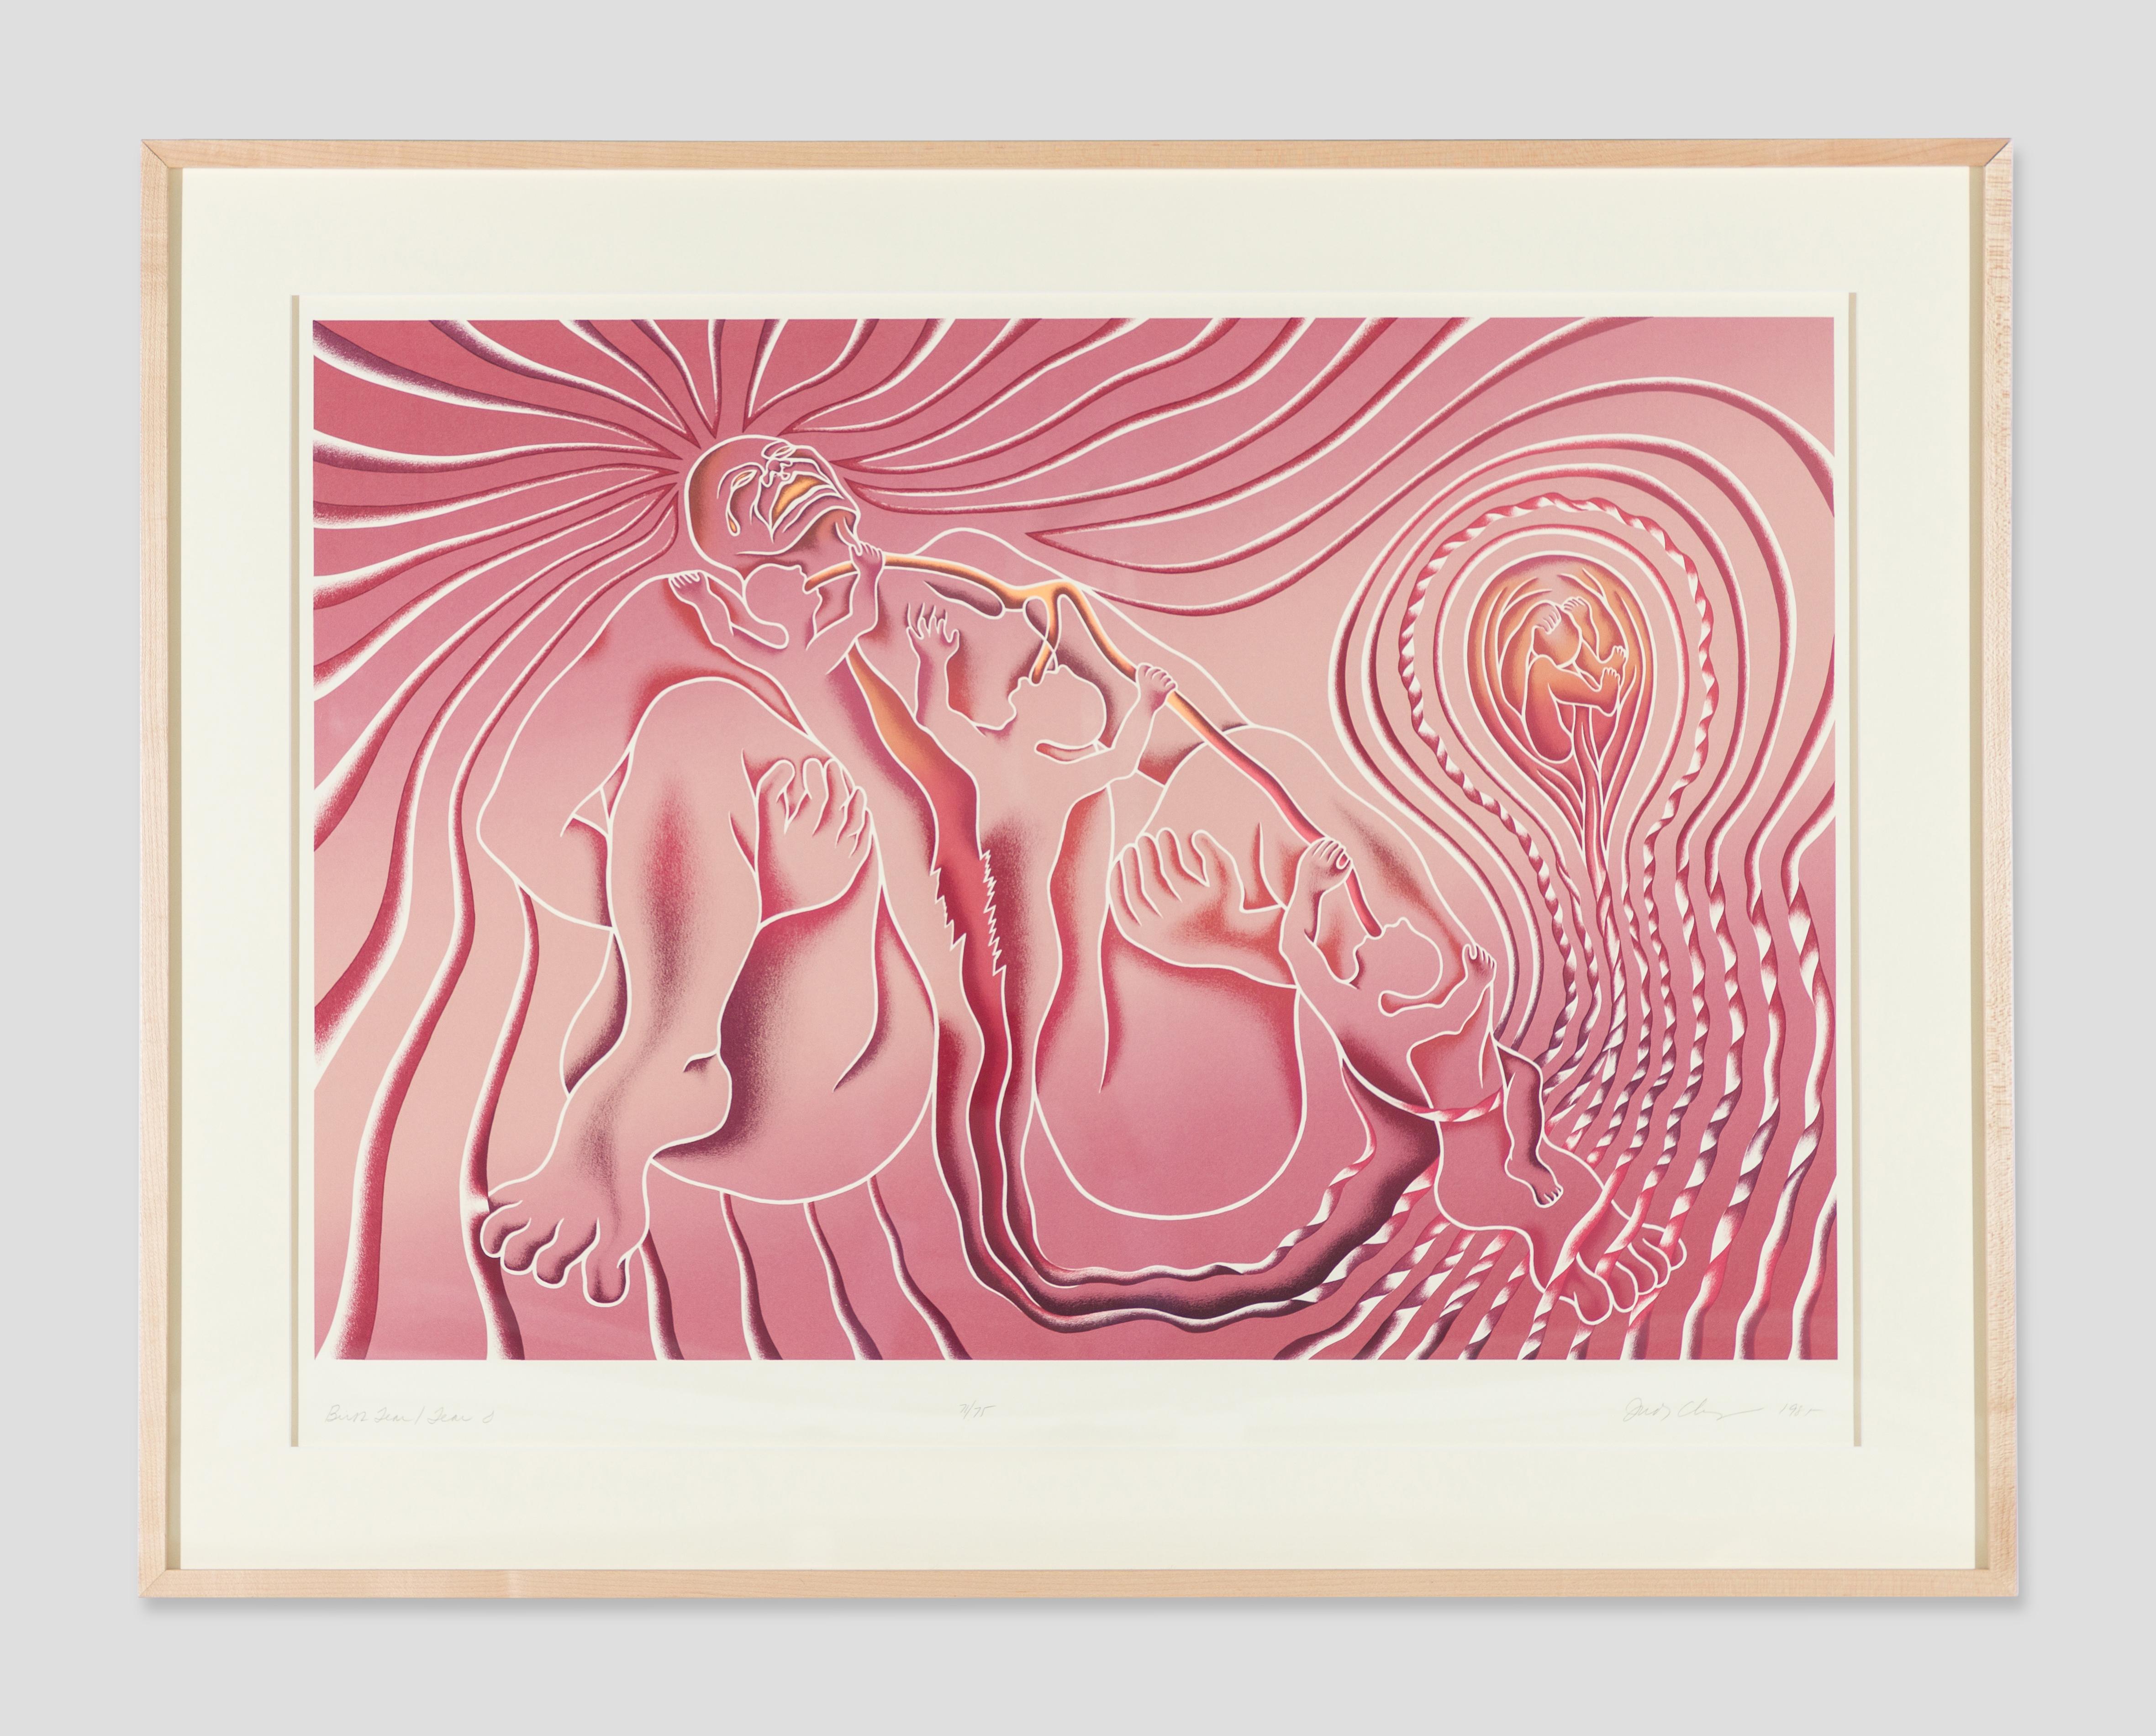 Judy Chicago Figurative Print - Birth Tear/Tear